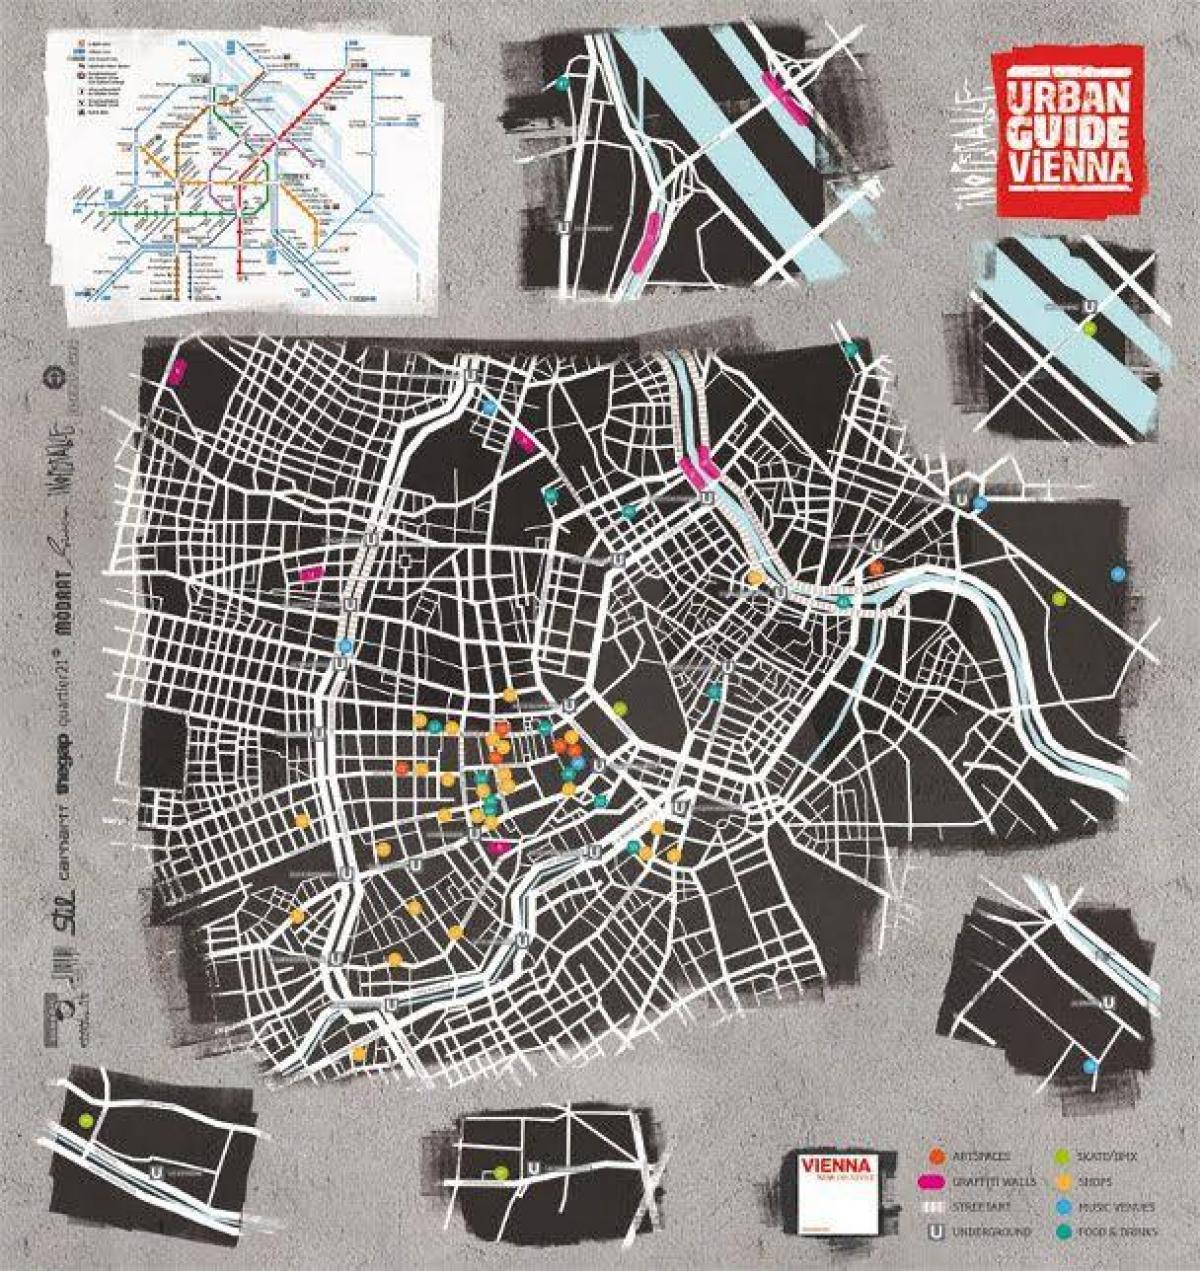 Քարտեզ փողոցային արվեստի Վիեննա